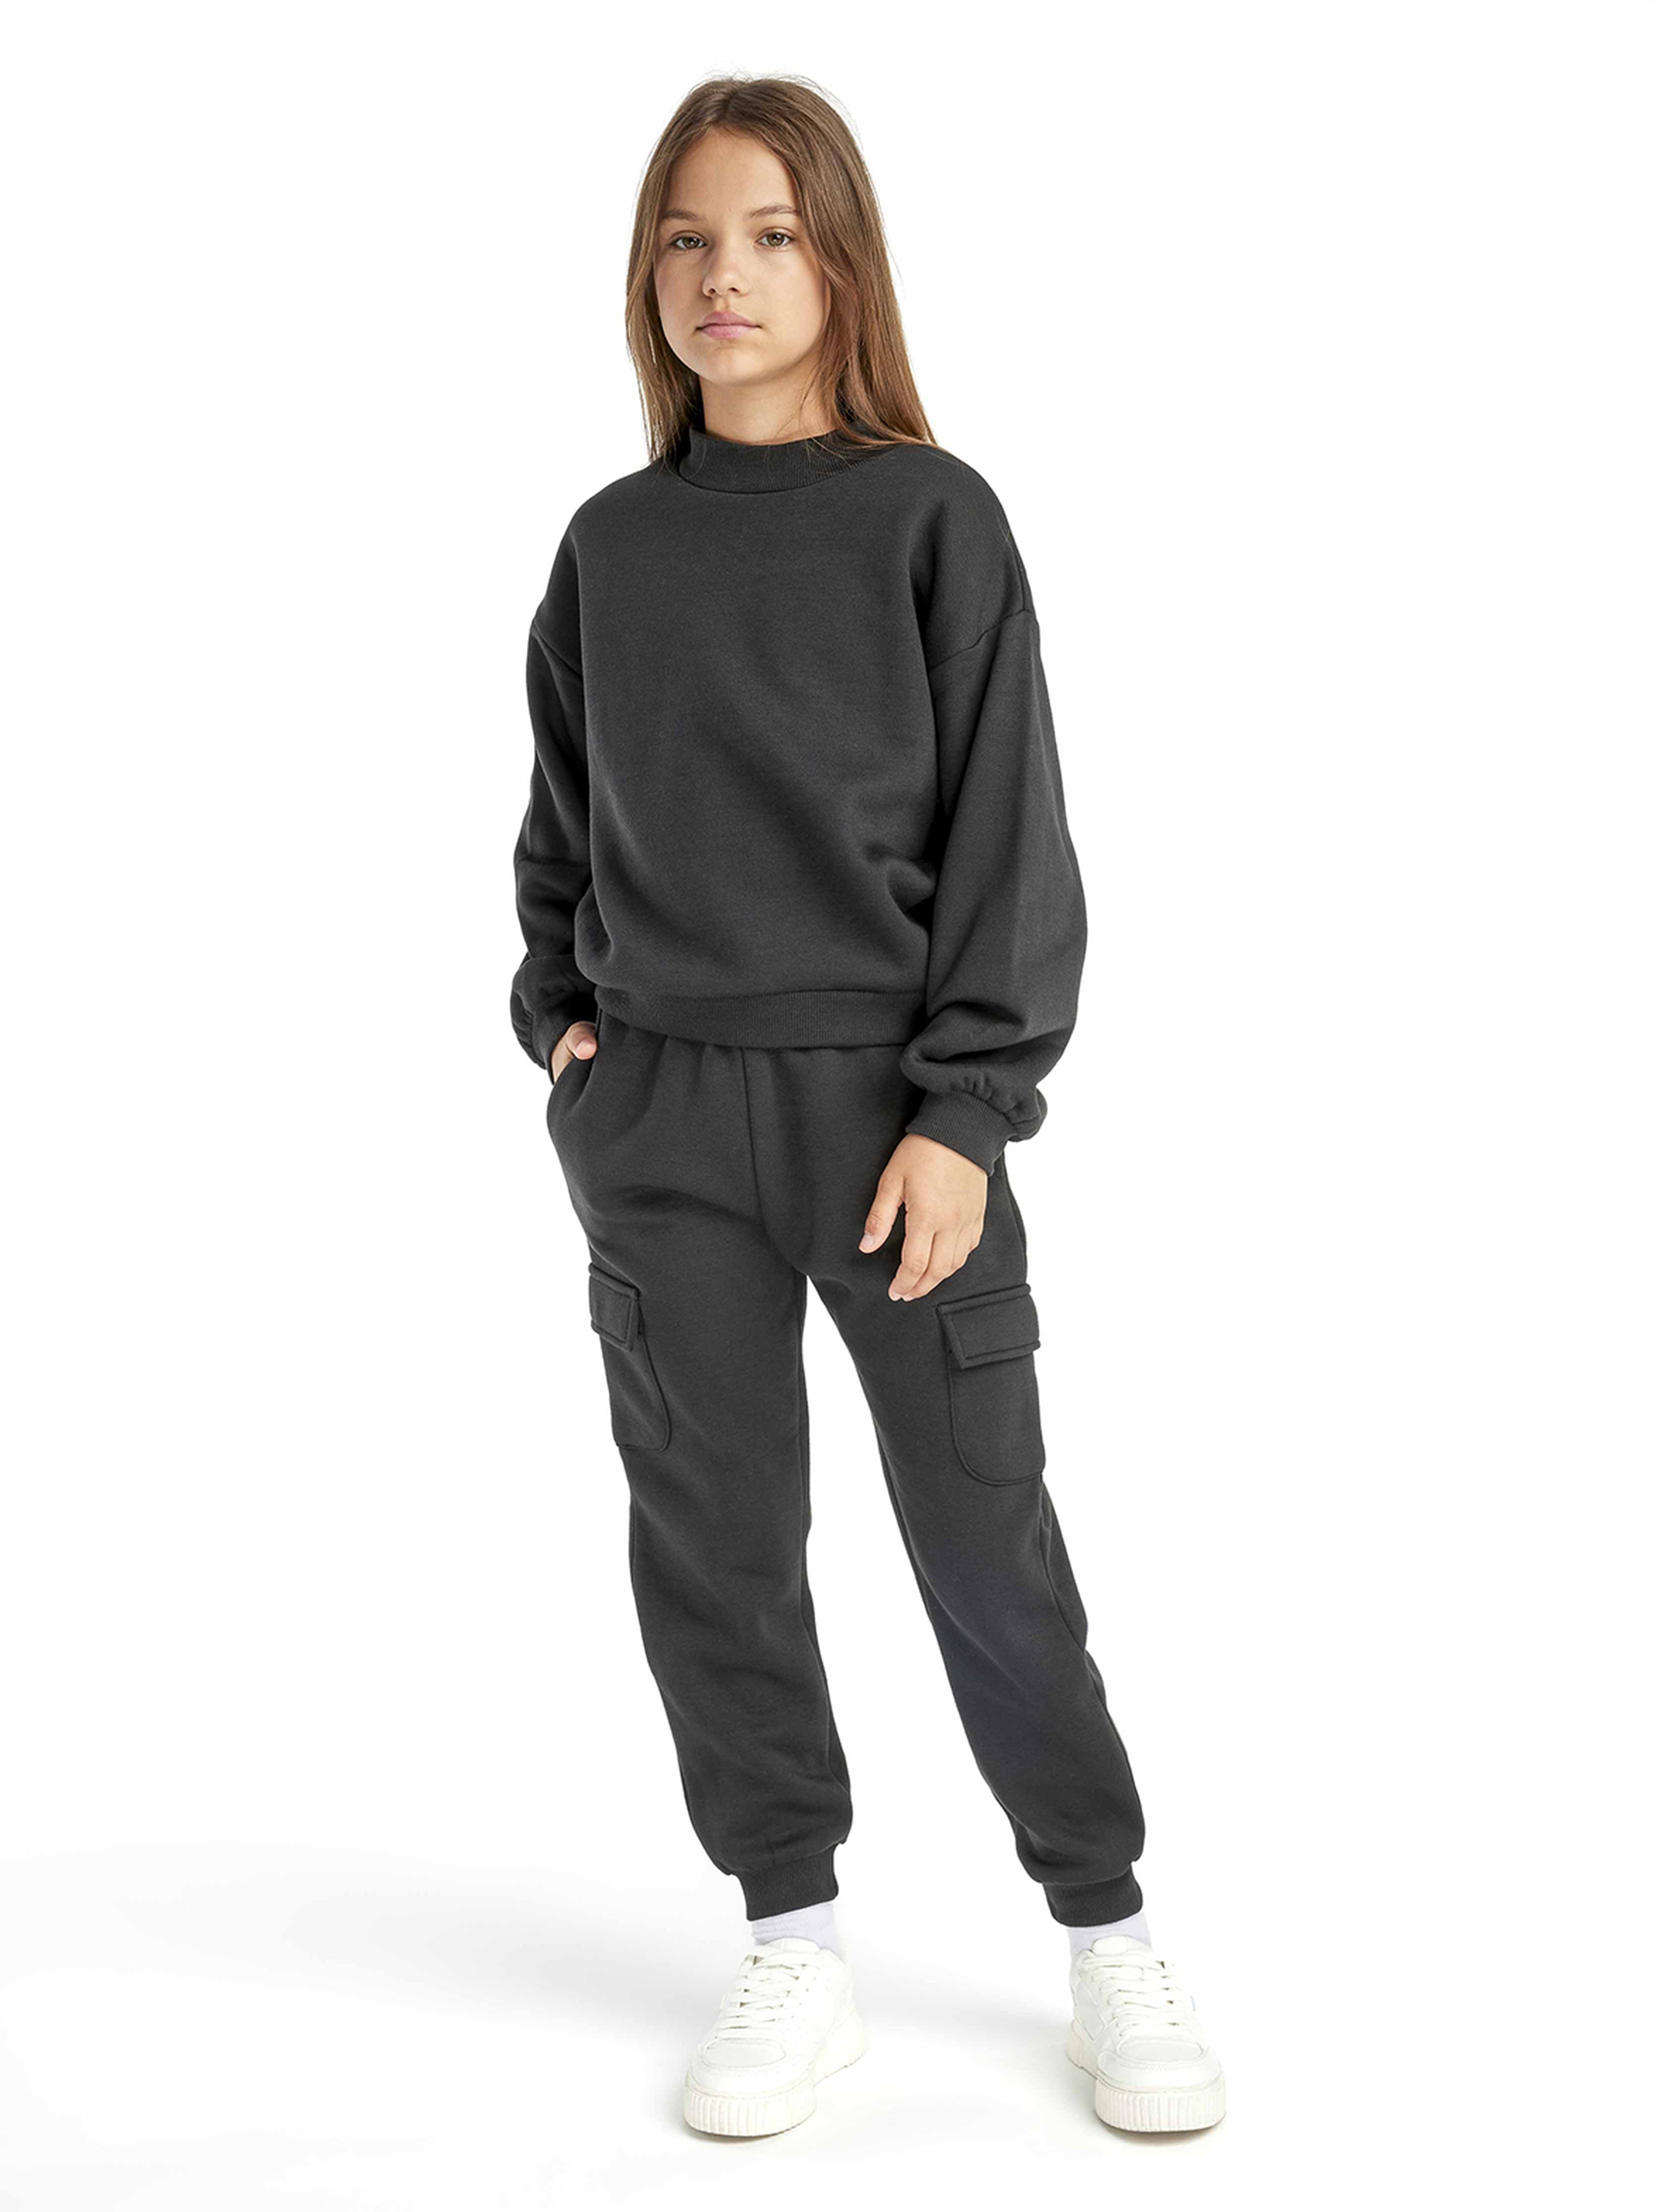 Czarny komplet dresowy dziewczęcy- bluza i spodnie bojówki